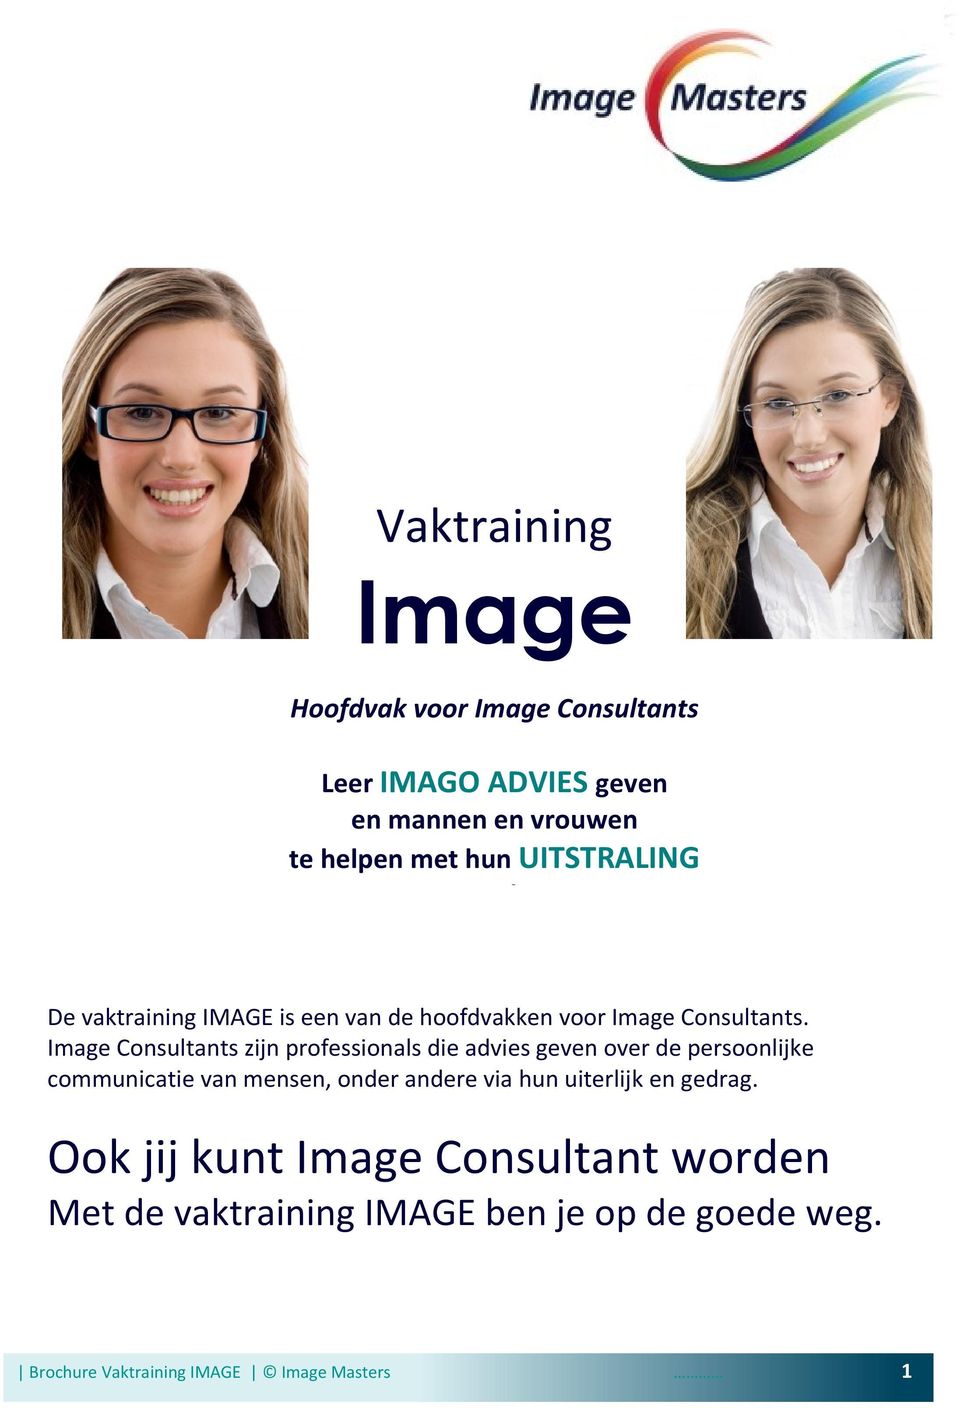 Image Consultants zijn professionals die advies geven over de persoonlijke communicatie van mensen, onder andere via hun